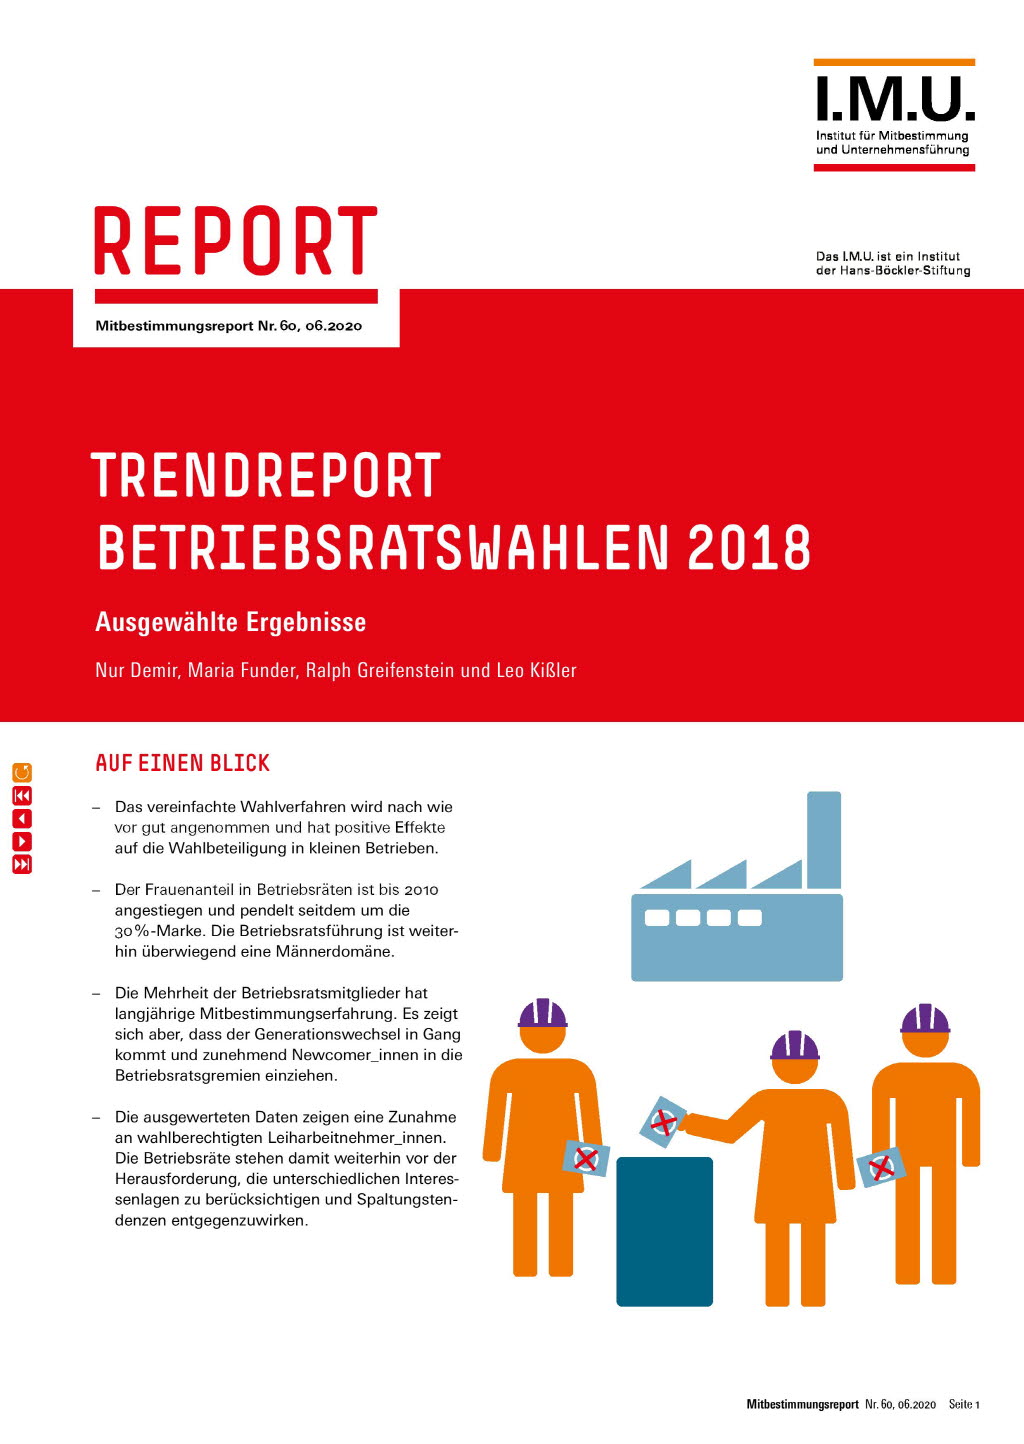 Trendreport Betriebsratswahlen 2018